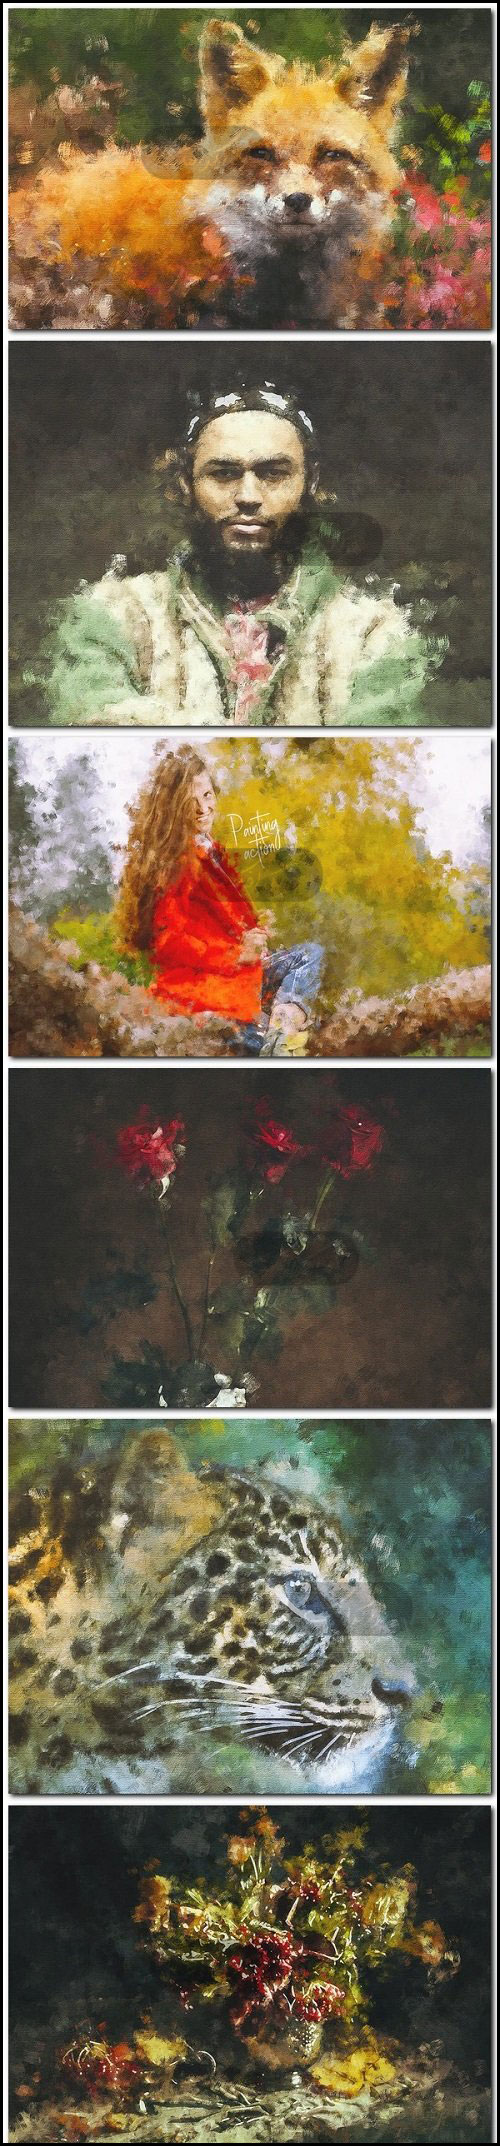 اکشن فتوشاپ ساخت نقاشی رنگ روغن - شماره 2